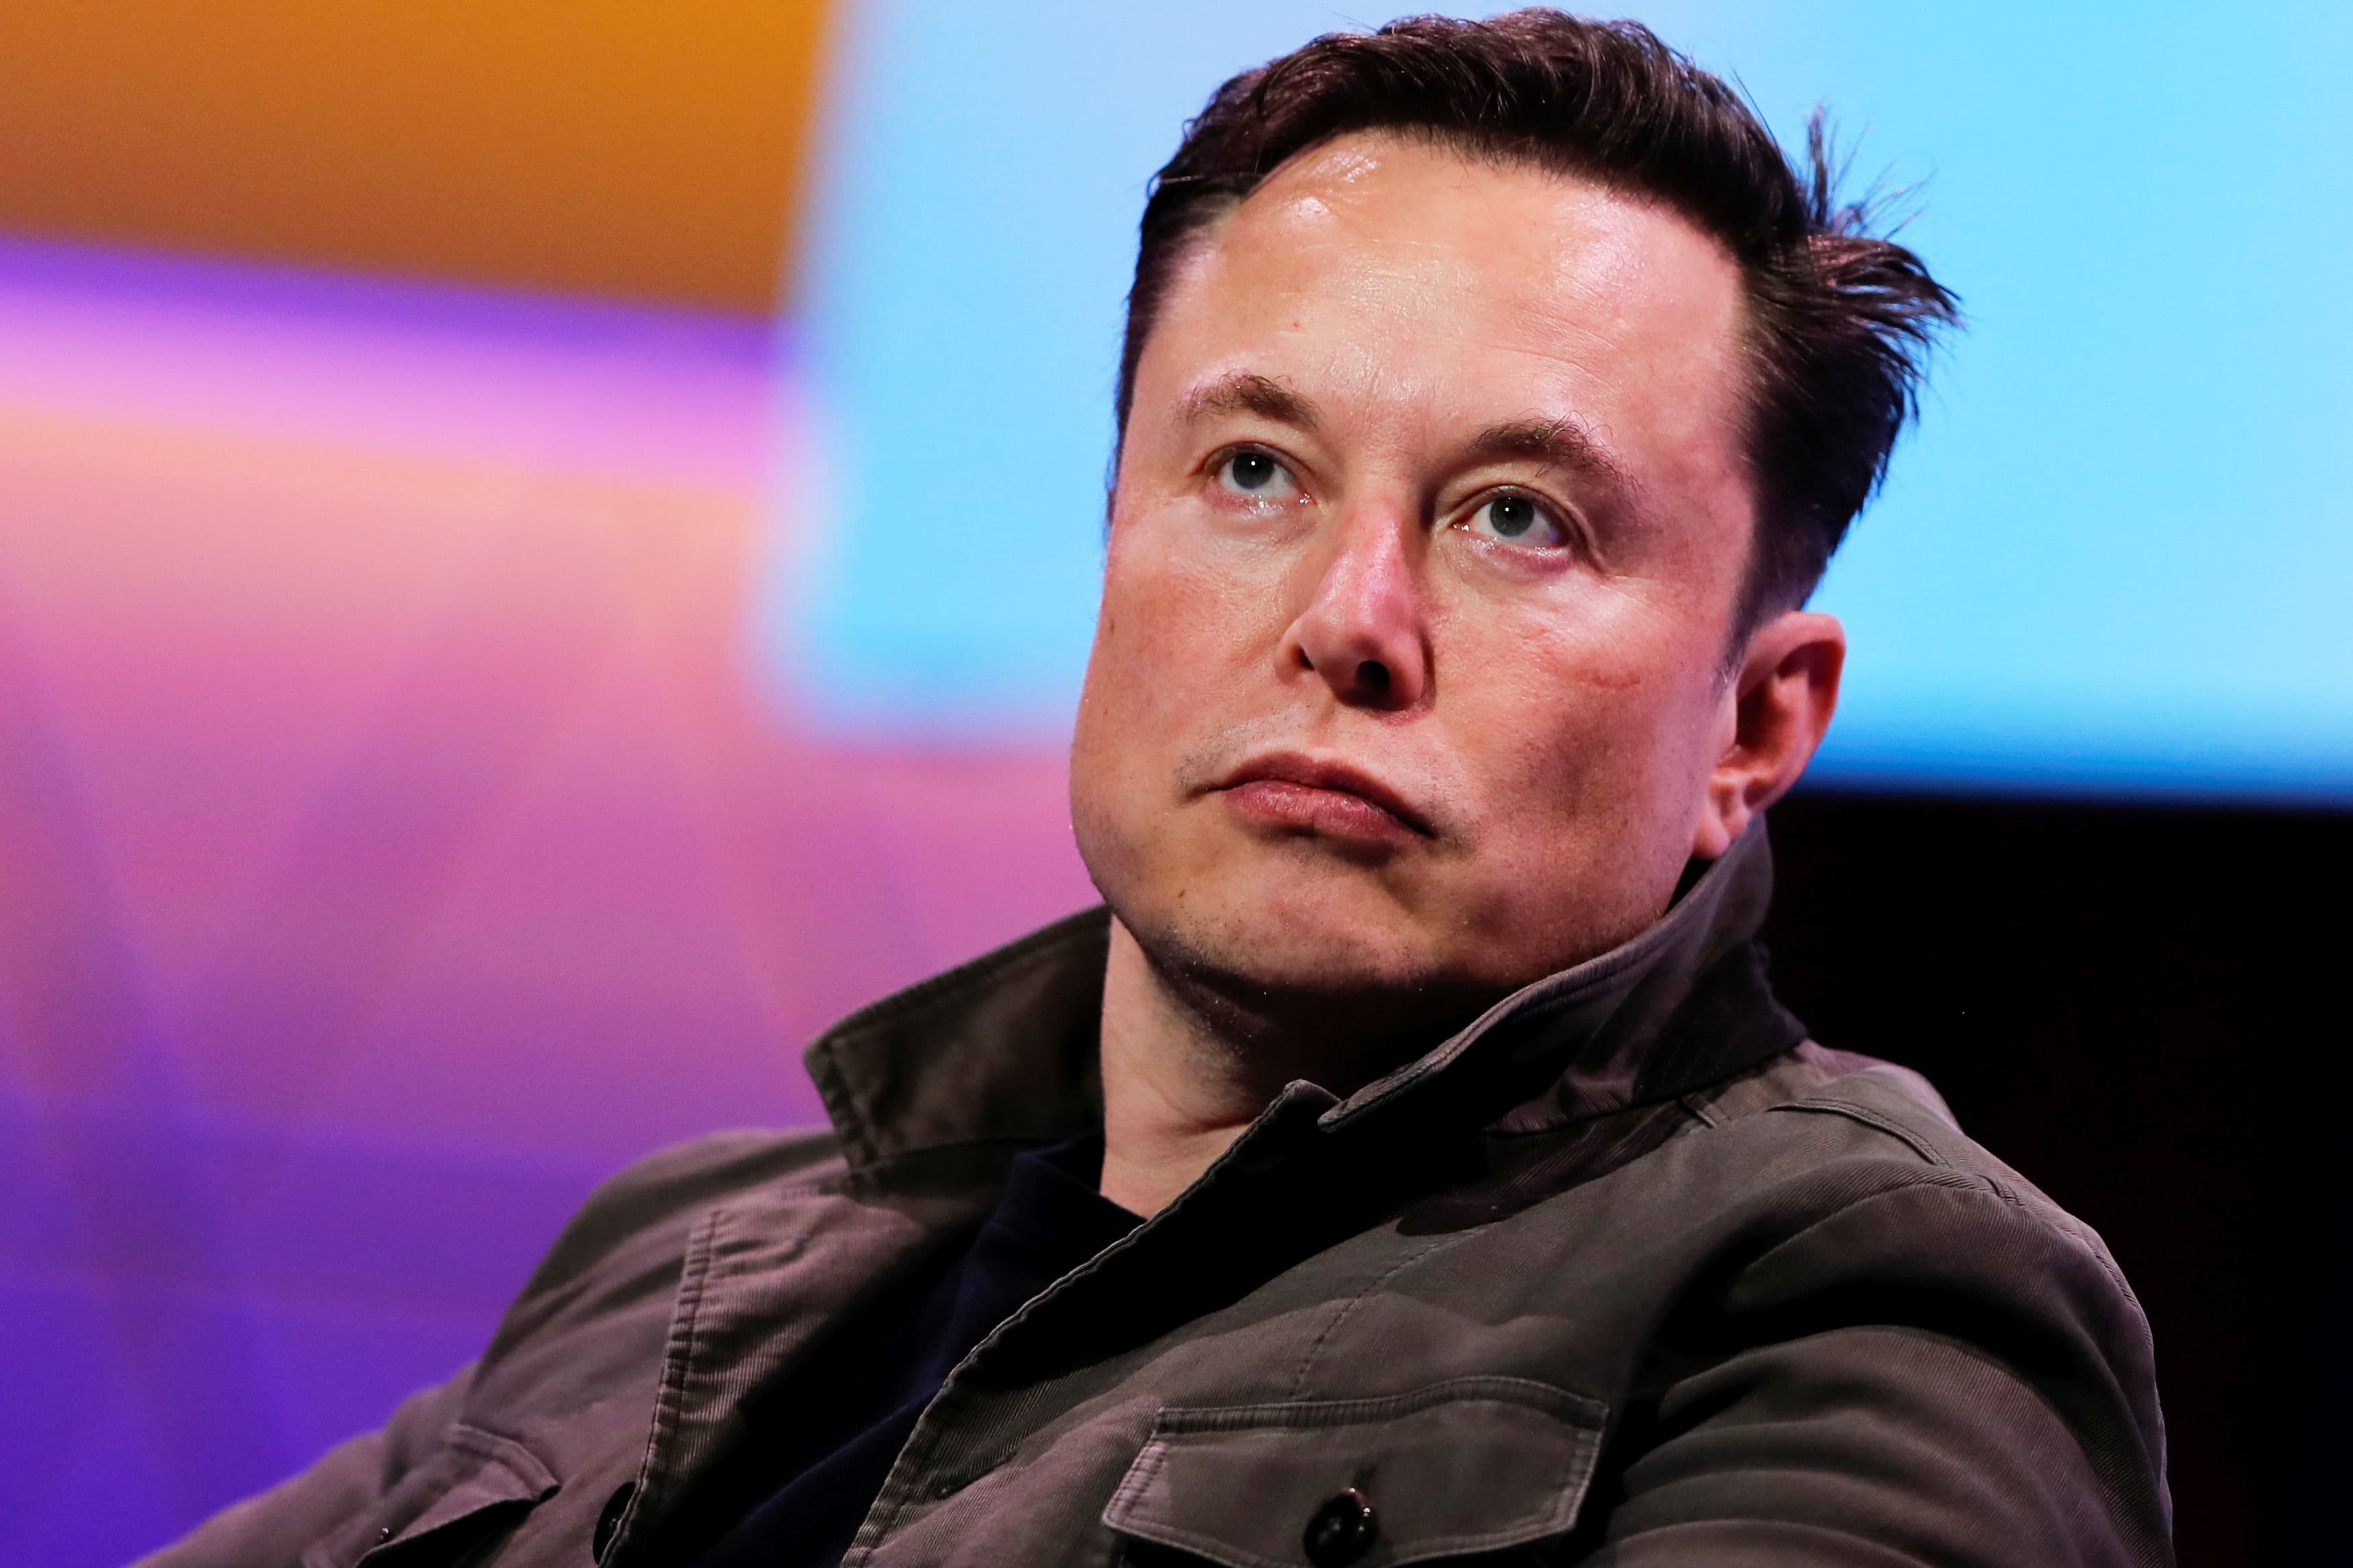 Elon Musk offered to buy Twitter for $43 billion